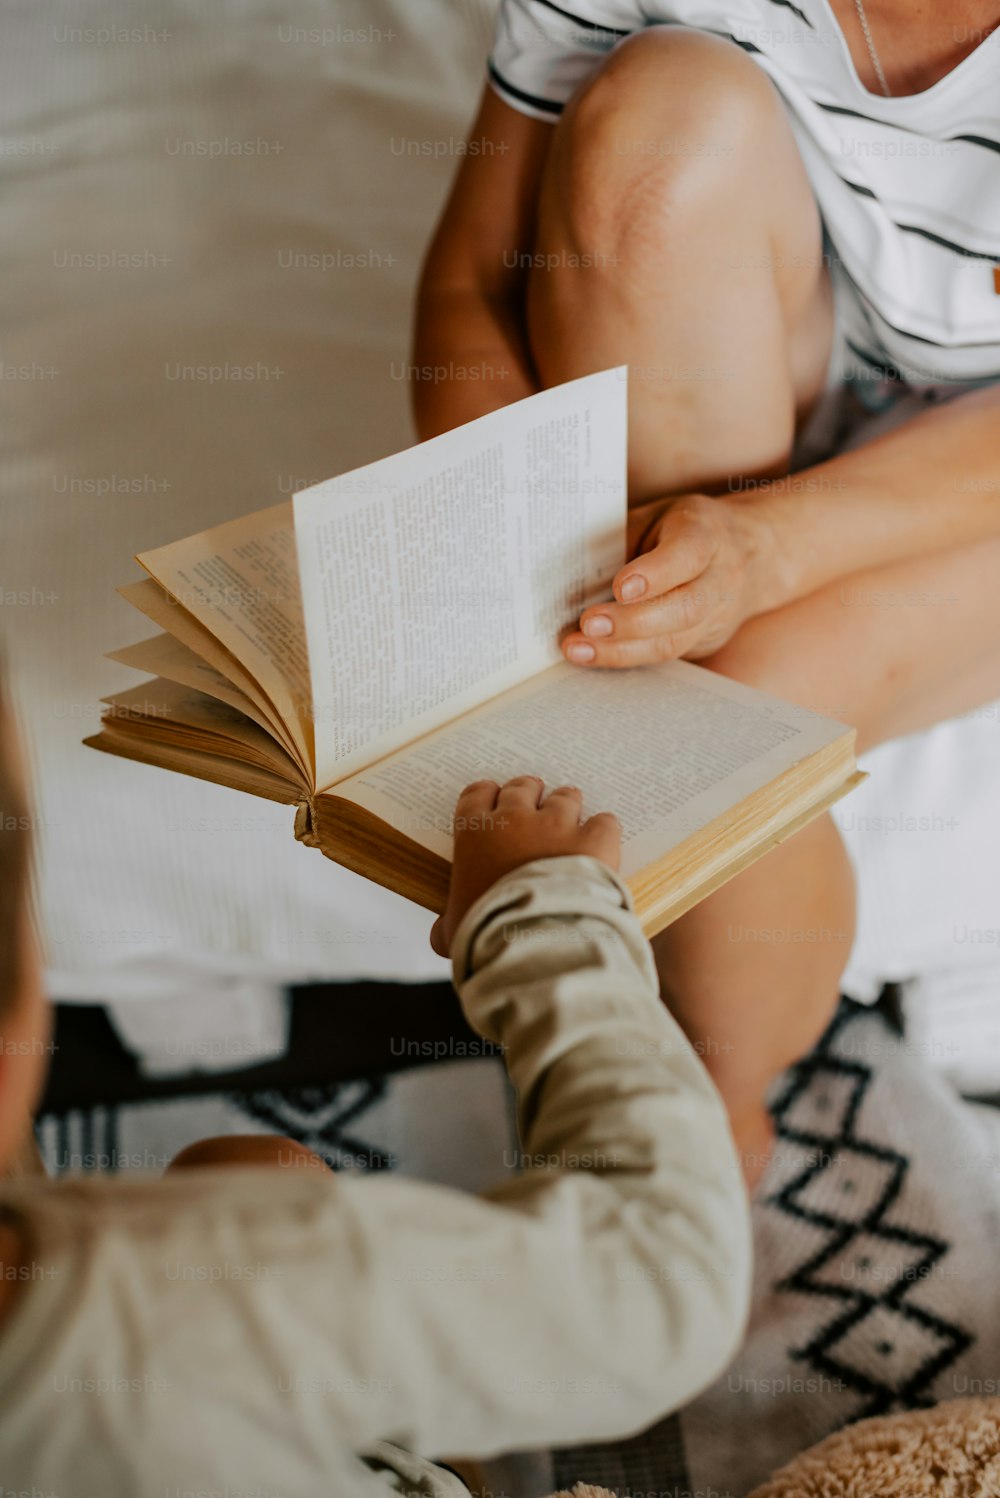 una donna che legge un libro a un bambino su un letto